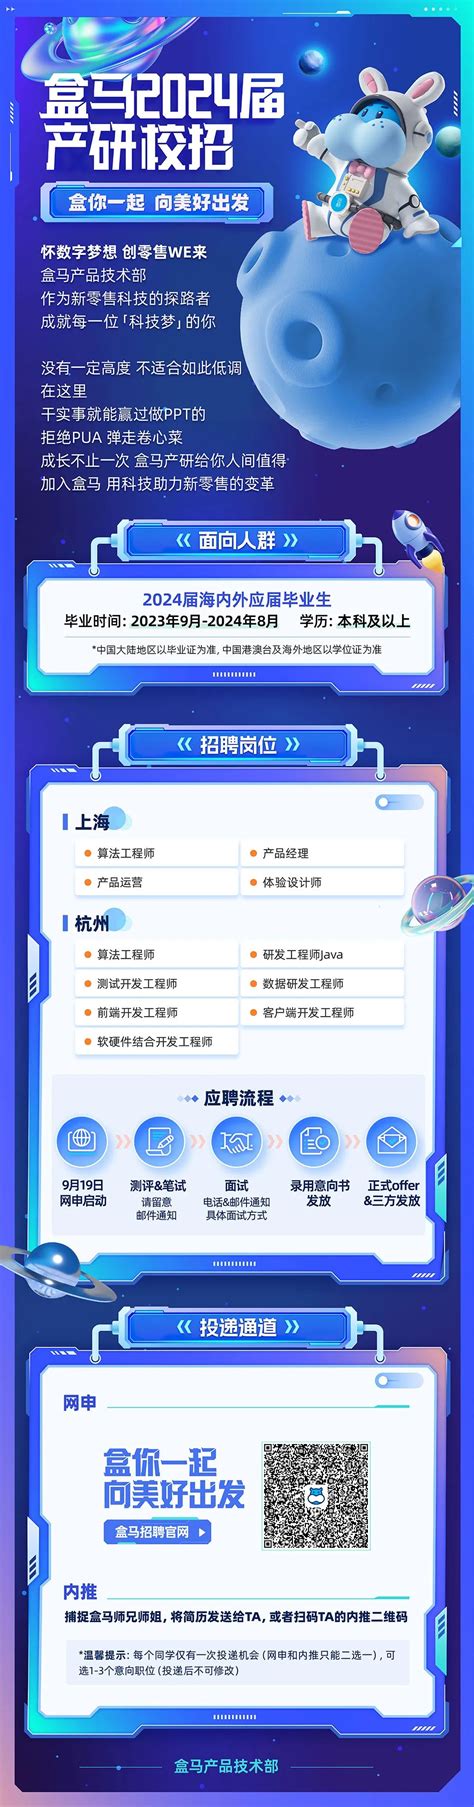 2024校园招聘-上海盒马网络科技有限公司招聘-就业信息网-海投网